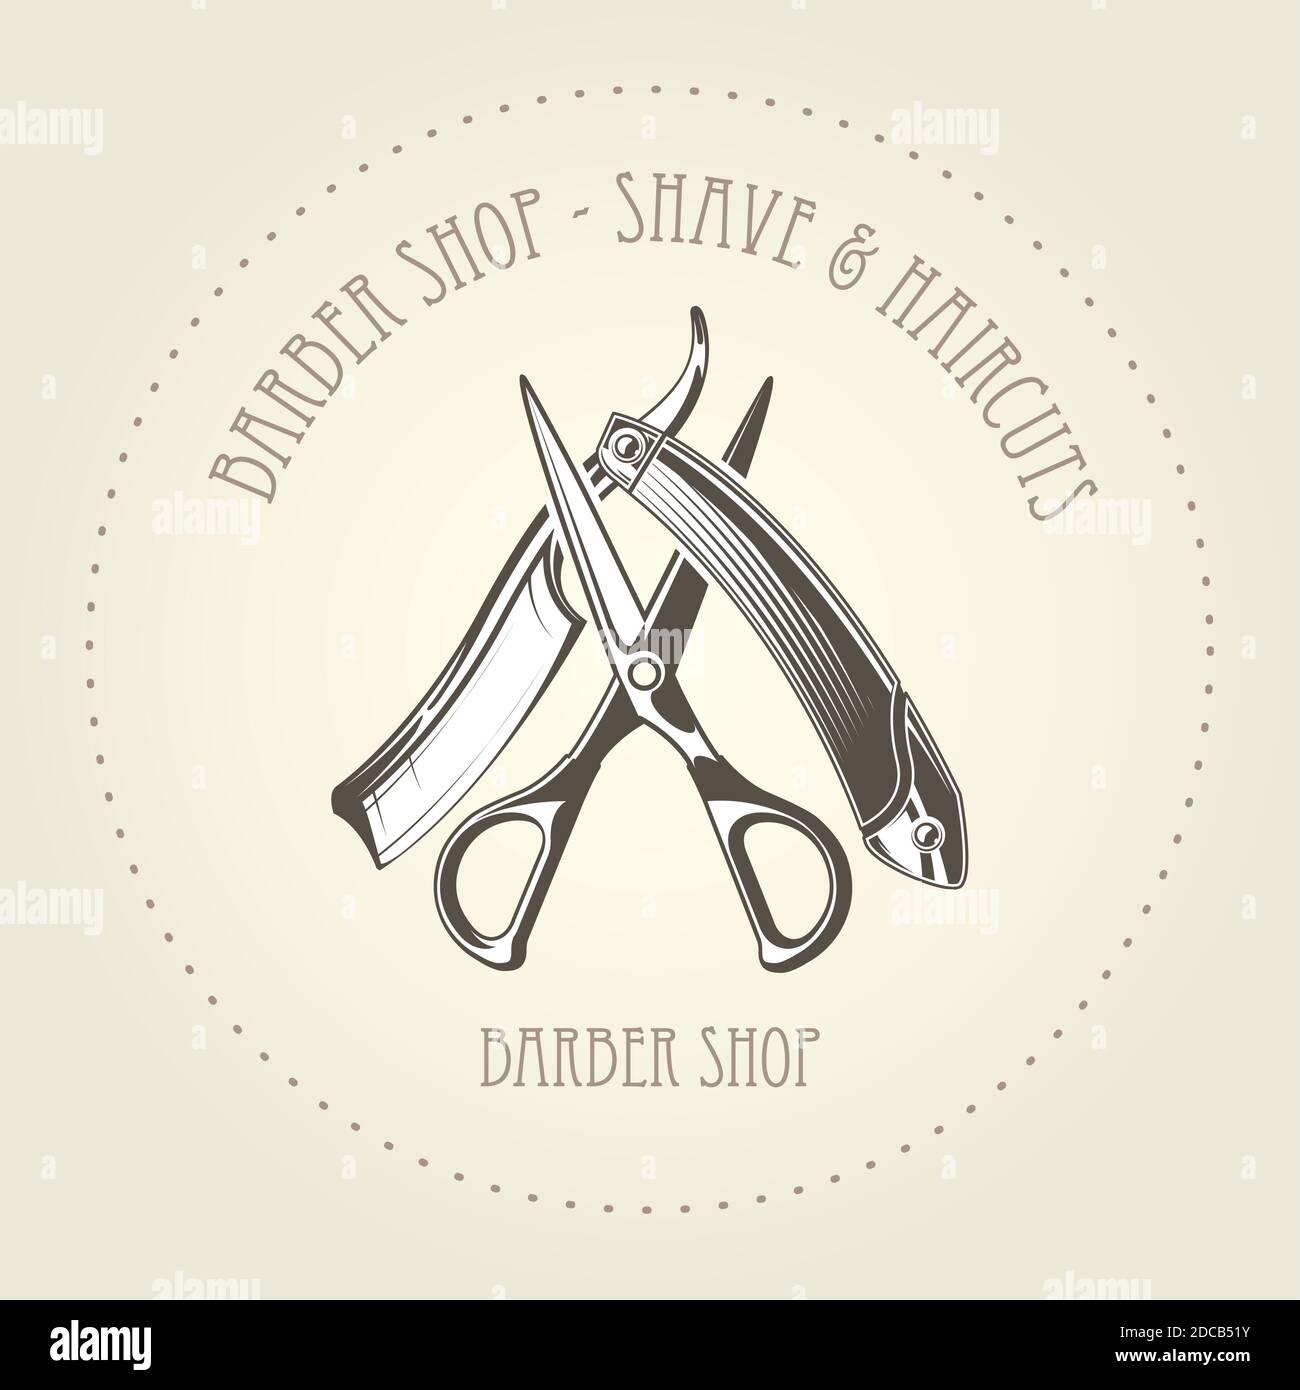 Barbershop Emblem mit alten geraden Rasiermesser und Scheren überlappen, Barber Shop Logo Vektor Stock Vektor